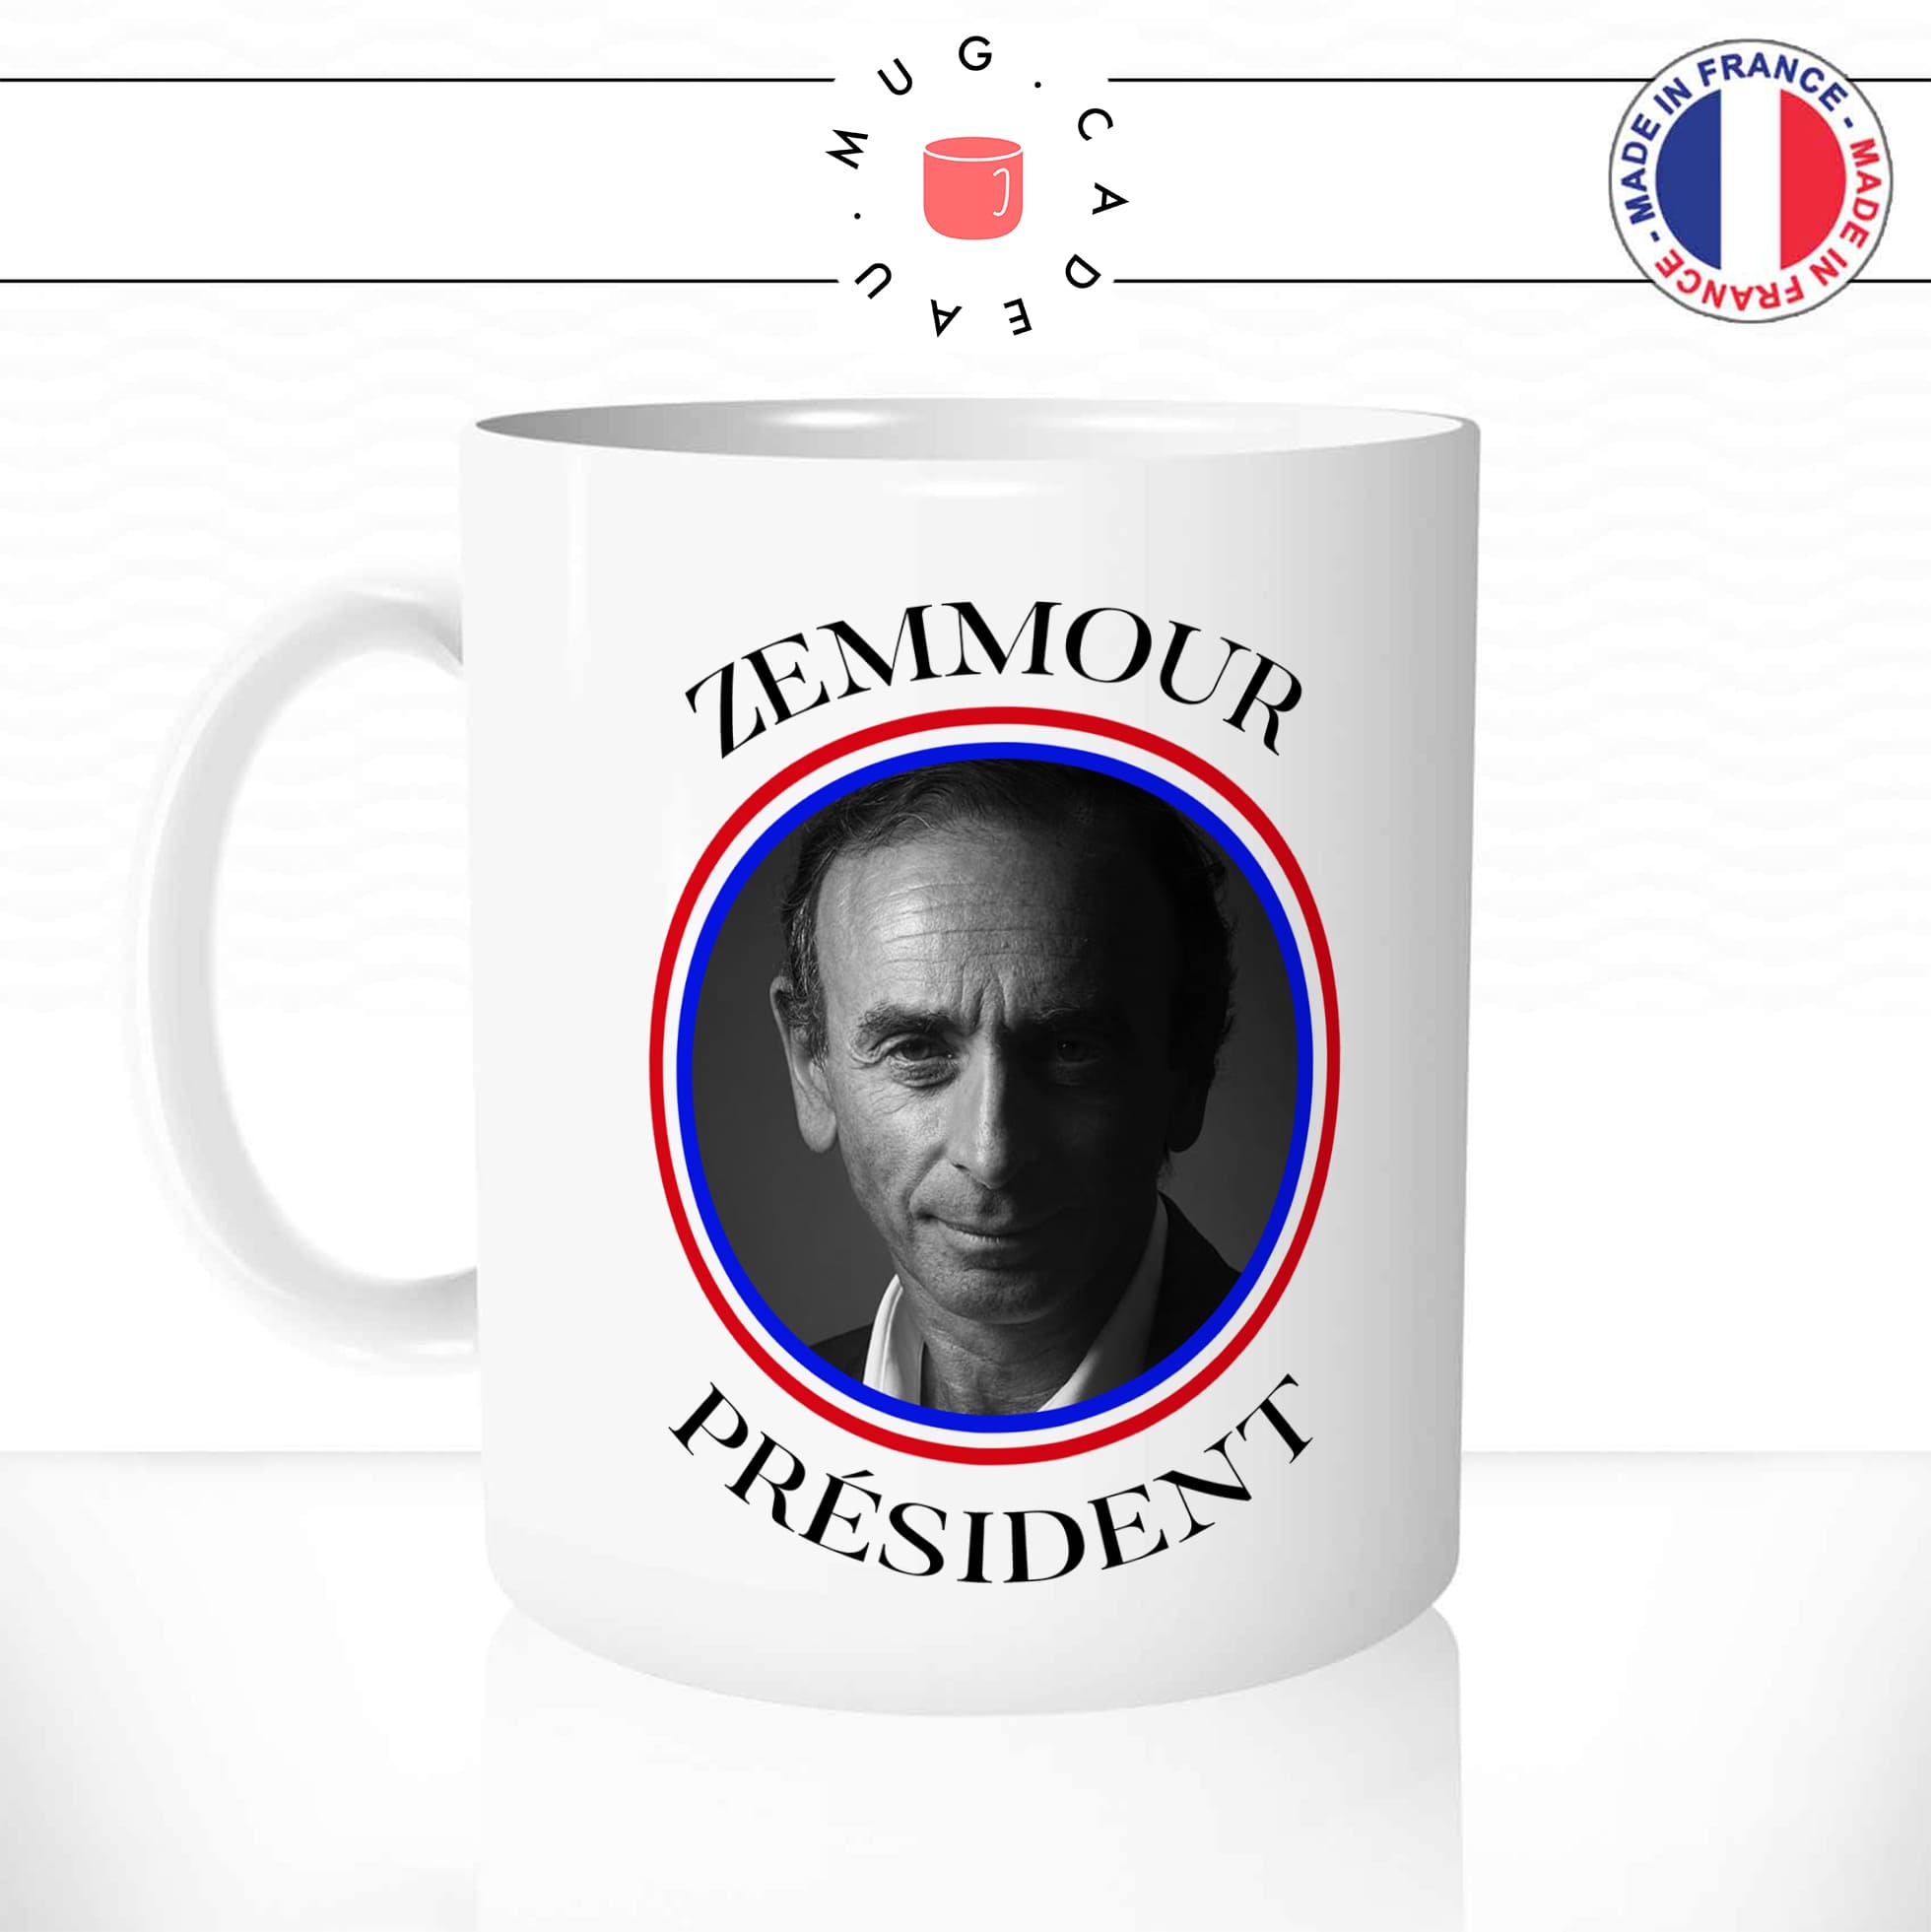 mug-tasse-blanc-brillant-zemmour-president-drapeau-francais-france-bleu-blanc-rouge-candidat-elections-idée-cadeau-originale-fun-unique